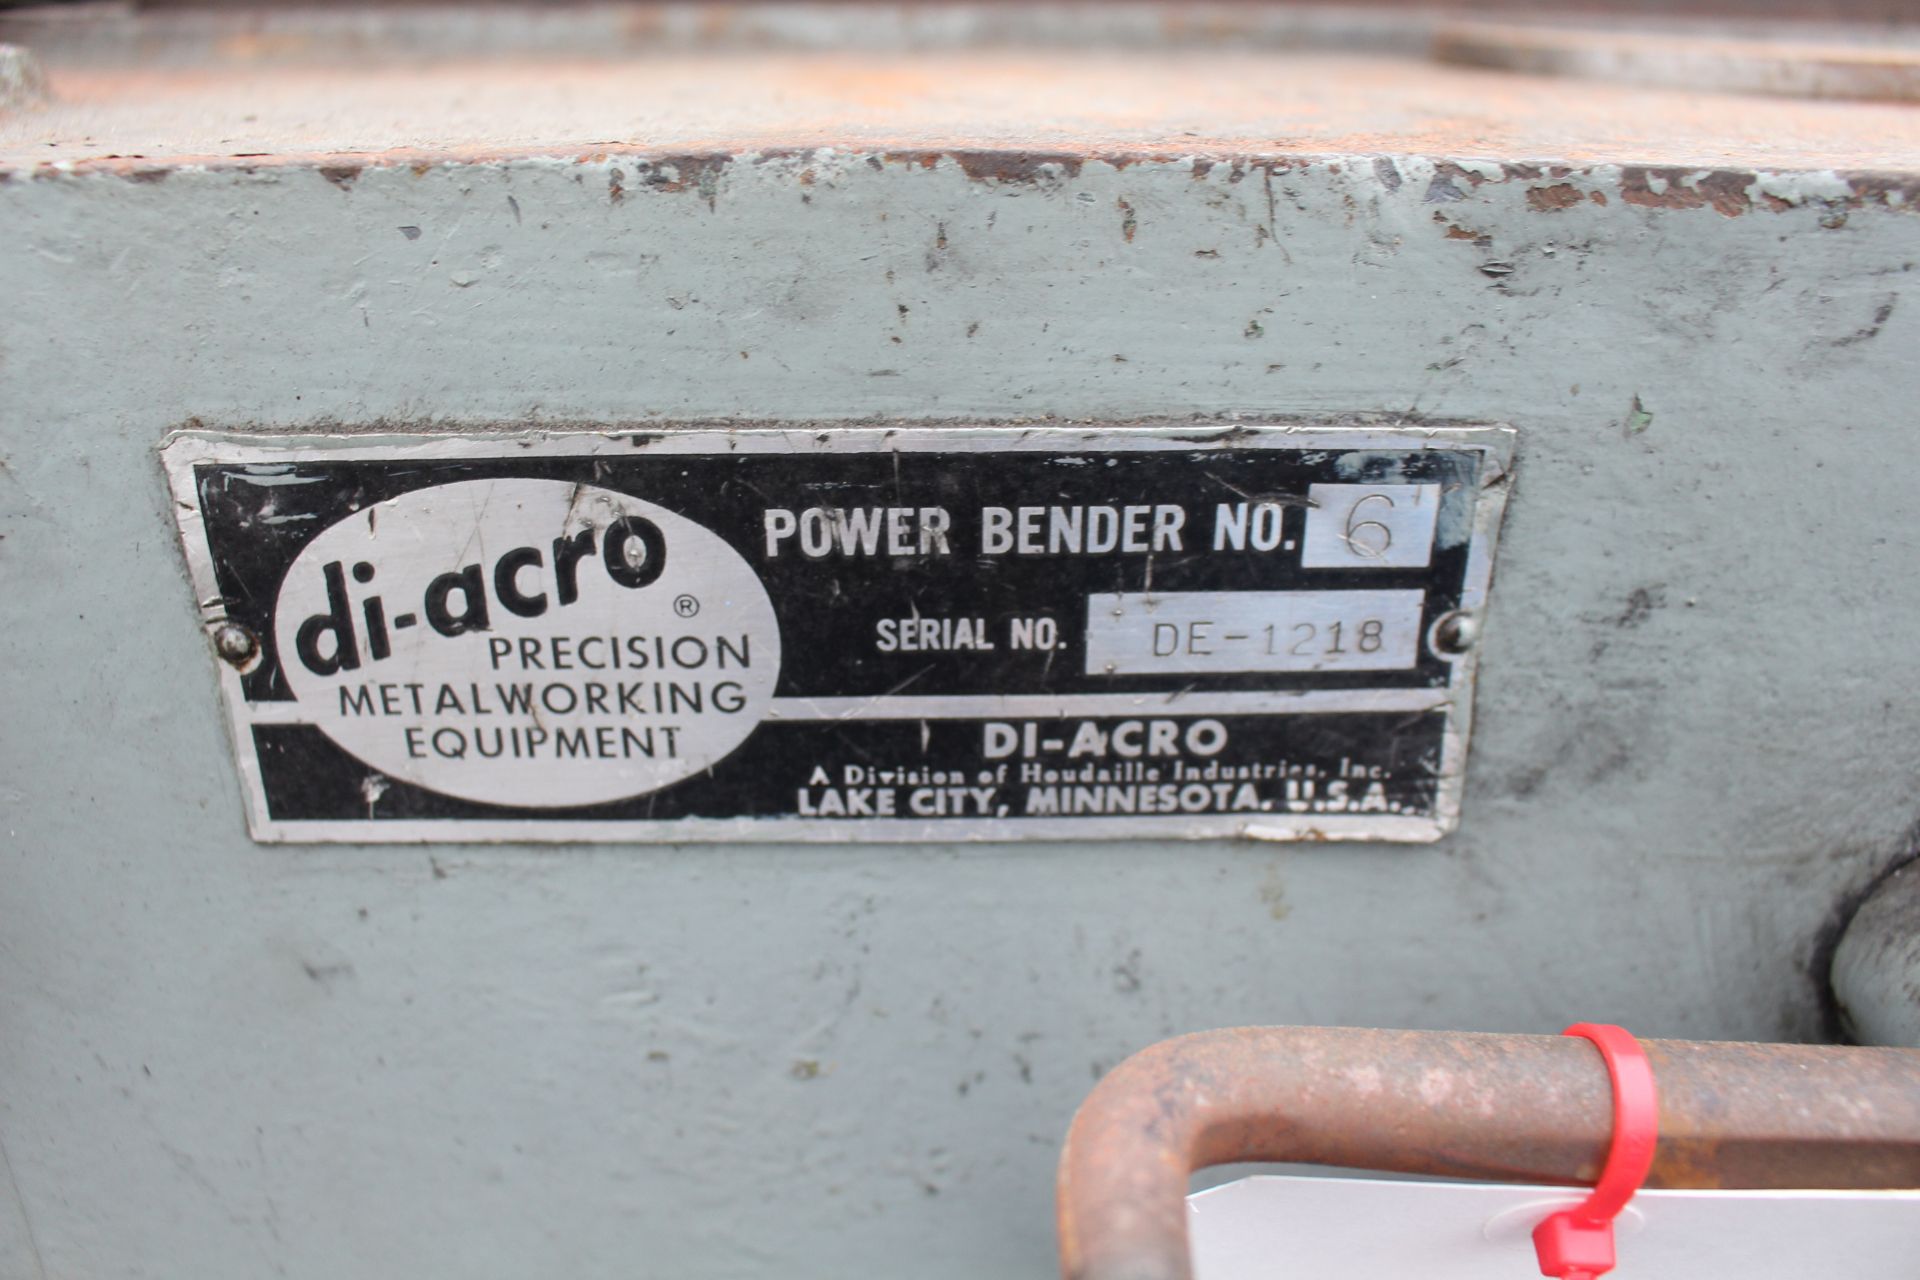 DI-ACRO #6 POWER BENDER, S/N DE-1218 - Image 5 of 5